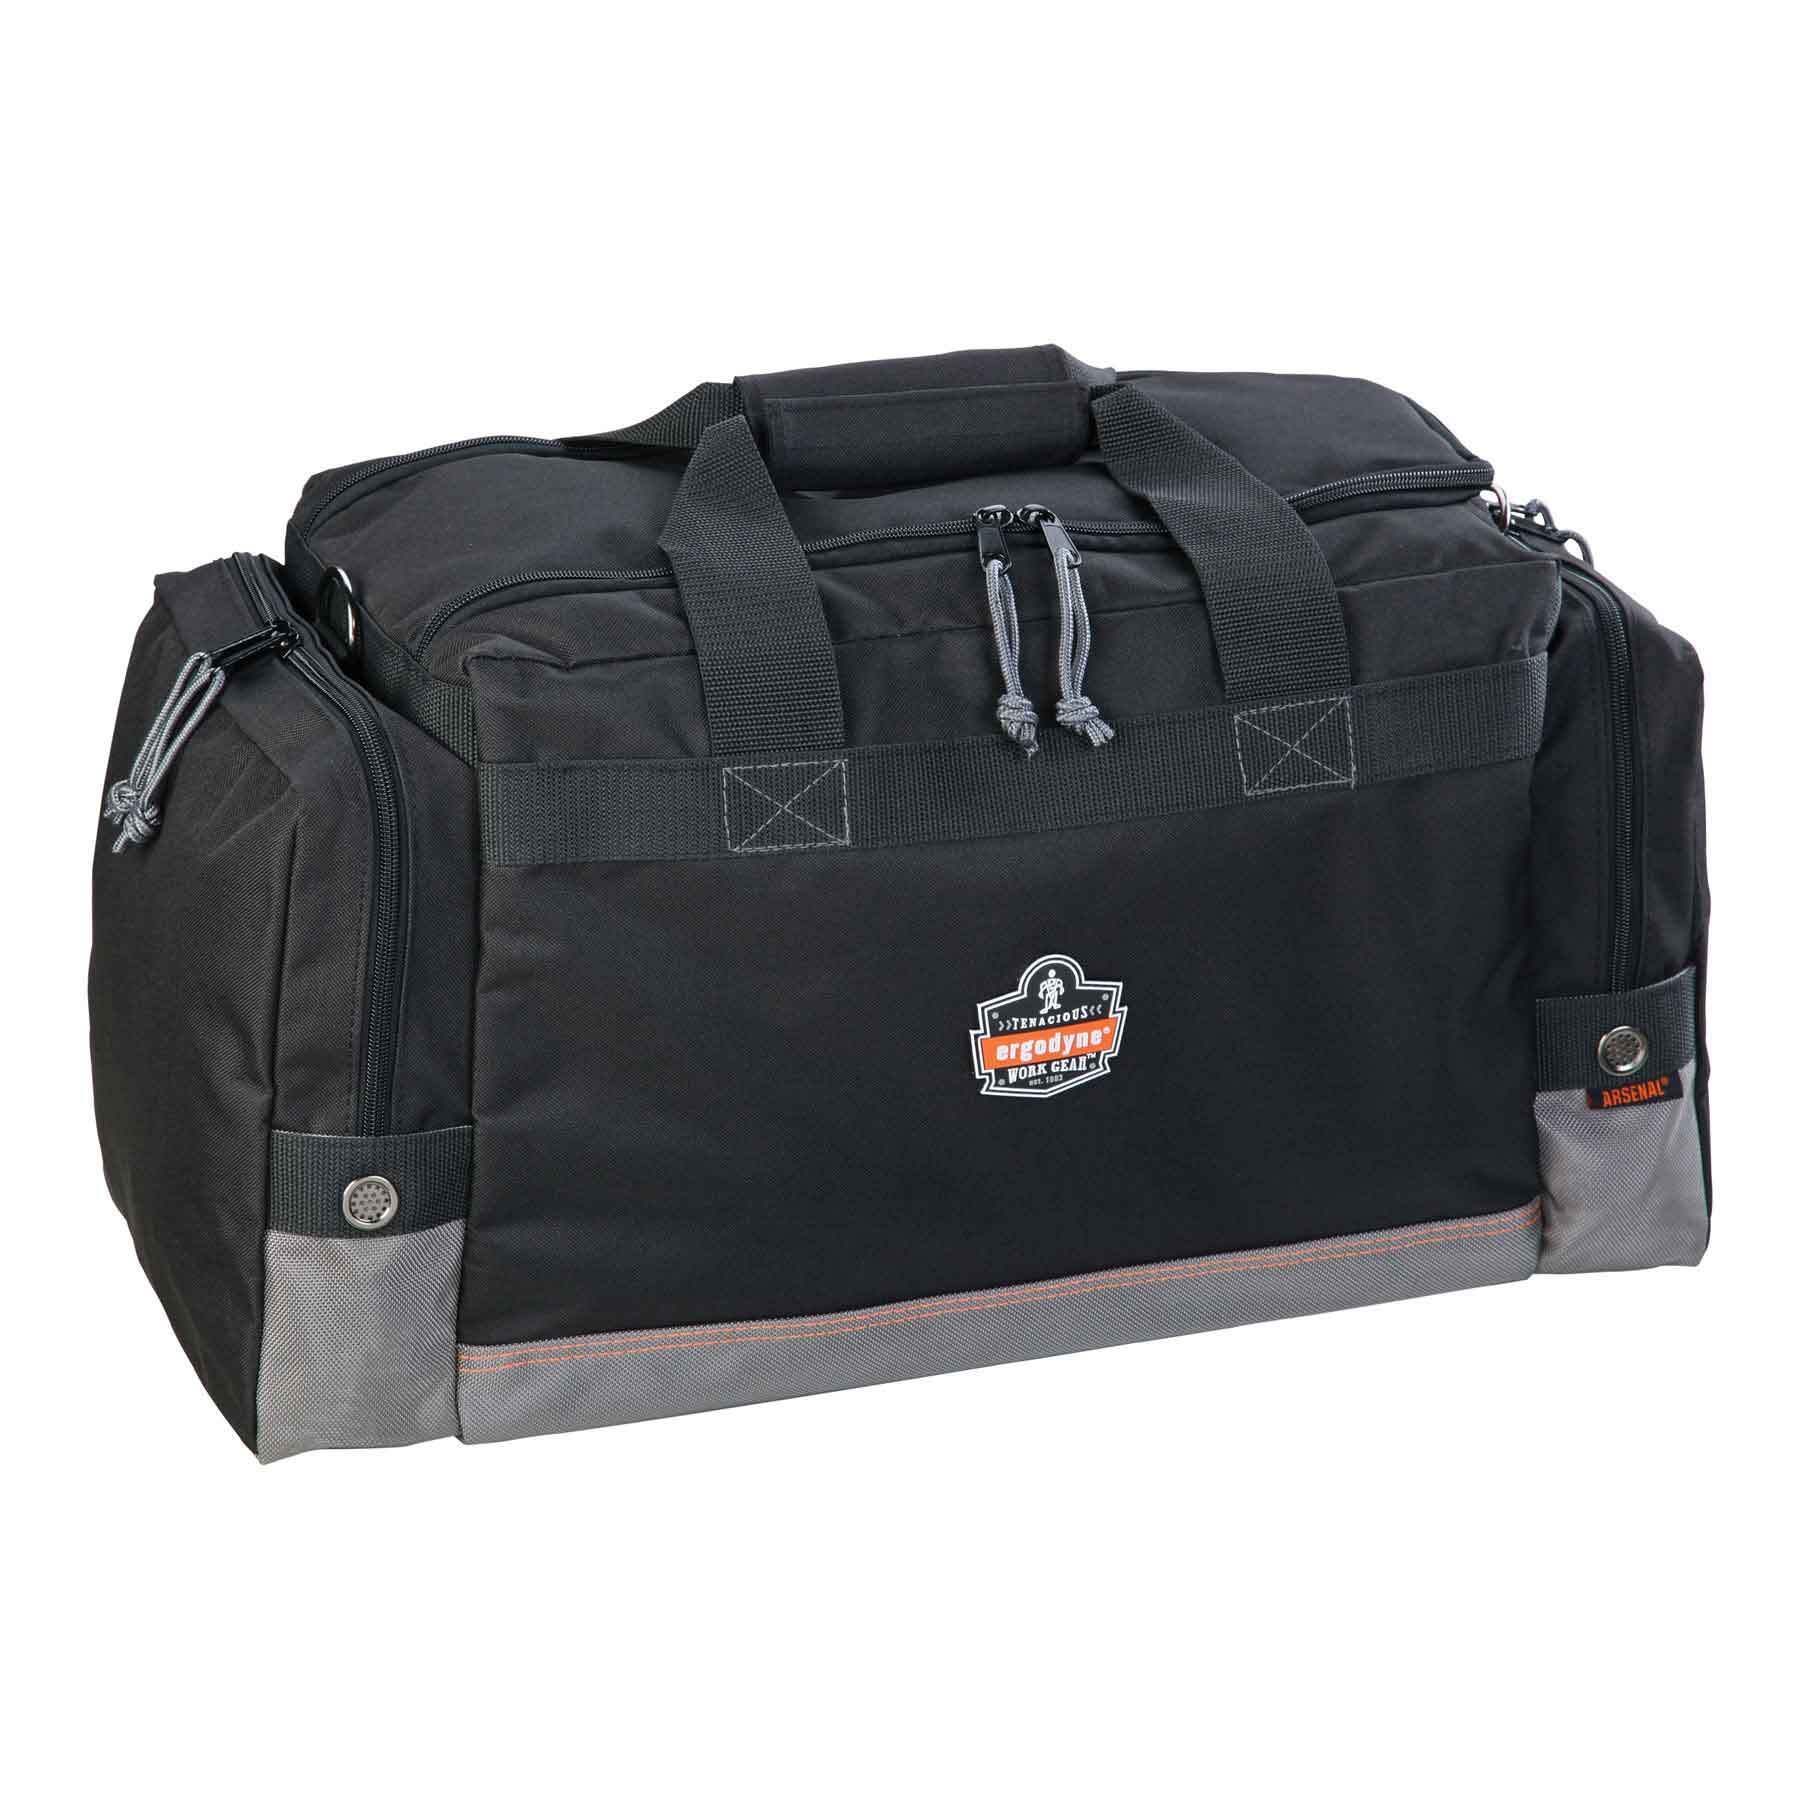 Ergodyne Arsenal General Duty Gear Bag from GME Supply